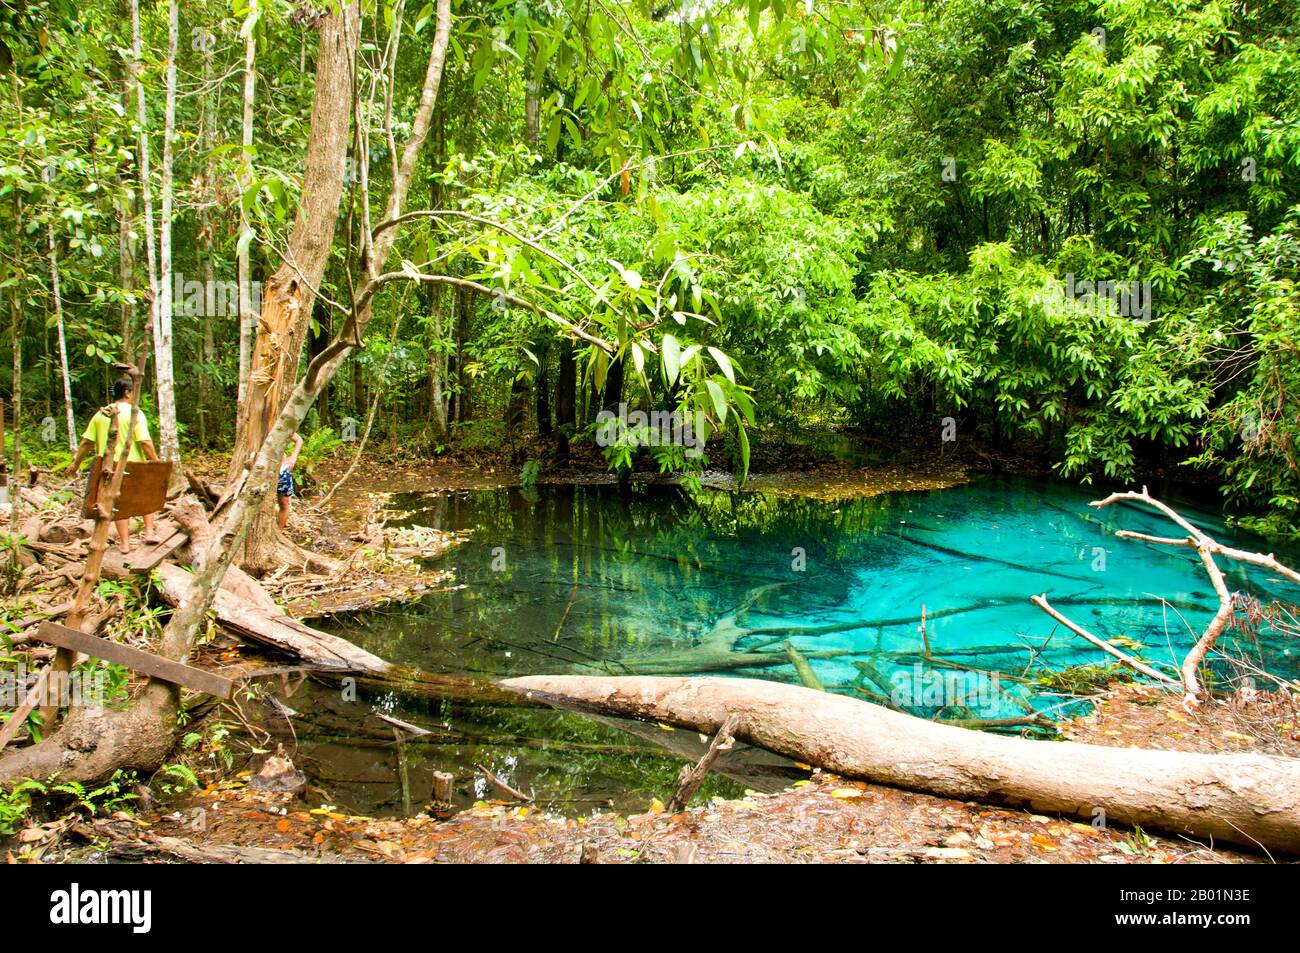 Thailand: Blue Pool, Tung Tieo Forest Trail, Khao Pra - Bang Khram Wildlife Sanctuary, Provinz Krabi. Das Khao Pra - Bang Khram Wildlife Sanctuary liegt südöstlich von Krabi Town 18 km östlich der kleinen Stadt Khlong Thom. Das bei Vogelbeobachtern beliebte Schutzgebiet ist die Heimat der seltenen Gurney’s Pitta, einer bedrohten Art, die einst als ausgestorben galt, aber in sehr geringer Zahl sowohl hier als auch über die Grenze in abgelegenen Teilen Südmyanmars (Burma) wiederentdeckt wurde. Stockfoto